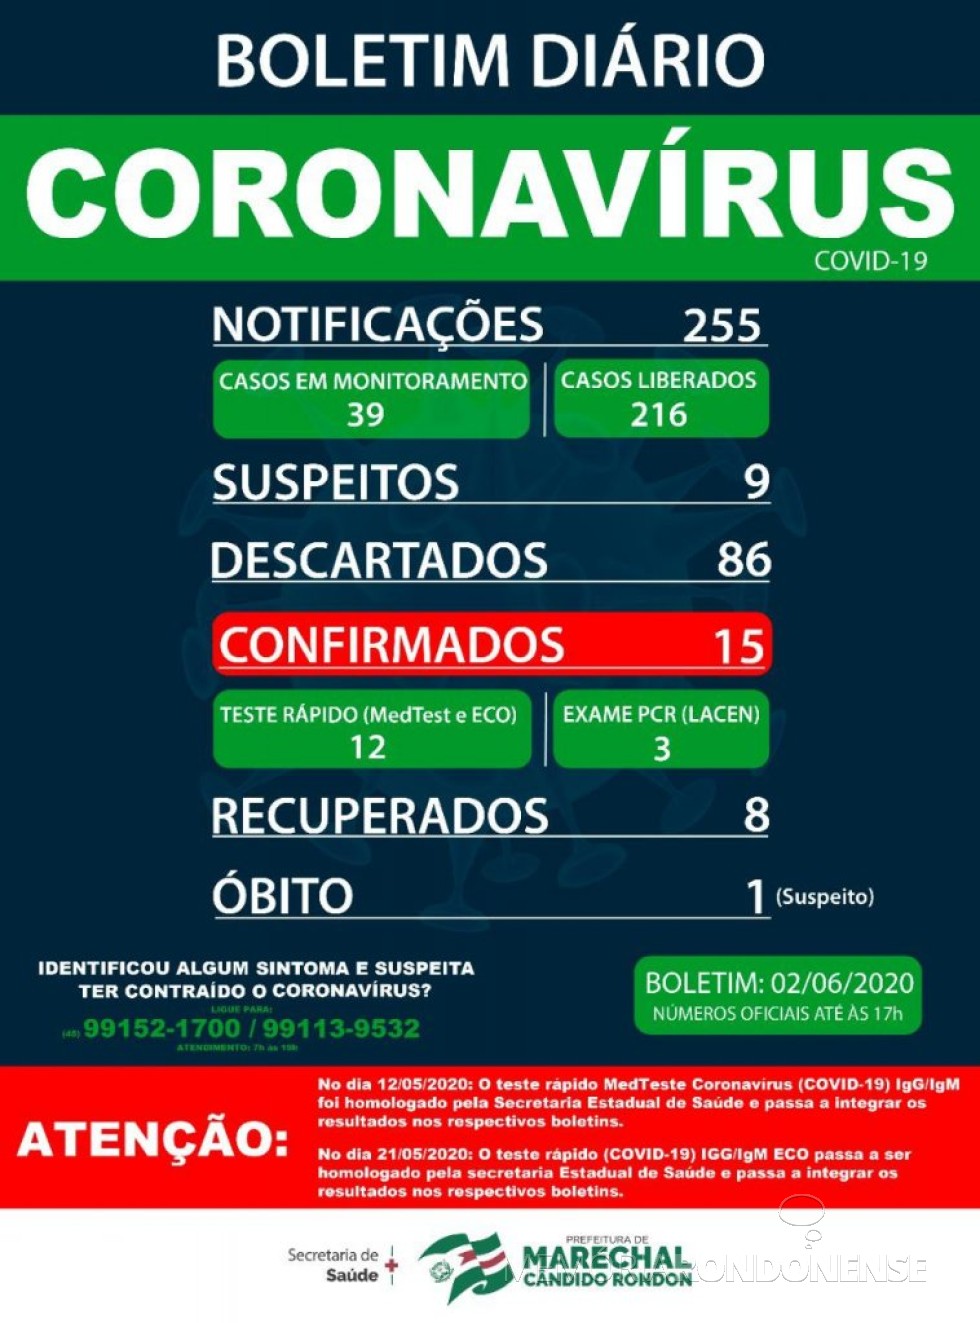 Boletim epidemiológico da Secretaria de Saúde  de Marechal Cândido Rondon informado o aumento de 14 para 15 os casos testados positivos para o COVID 19 no município.
Imagem: Acervo Imprensa PM-MCR - FOTO  13 - 